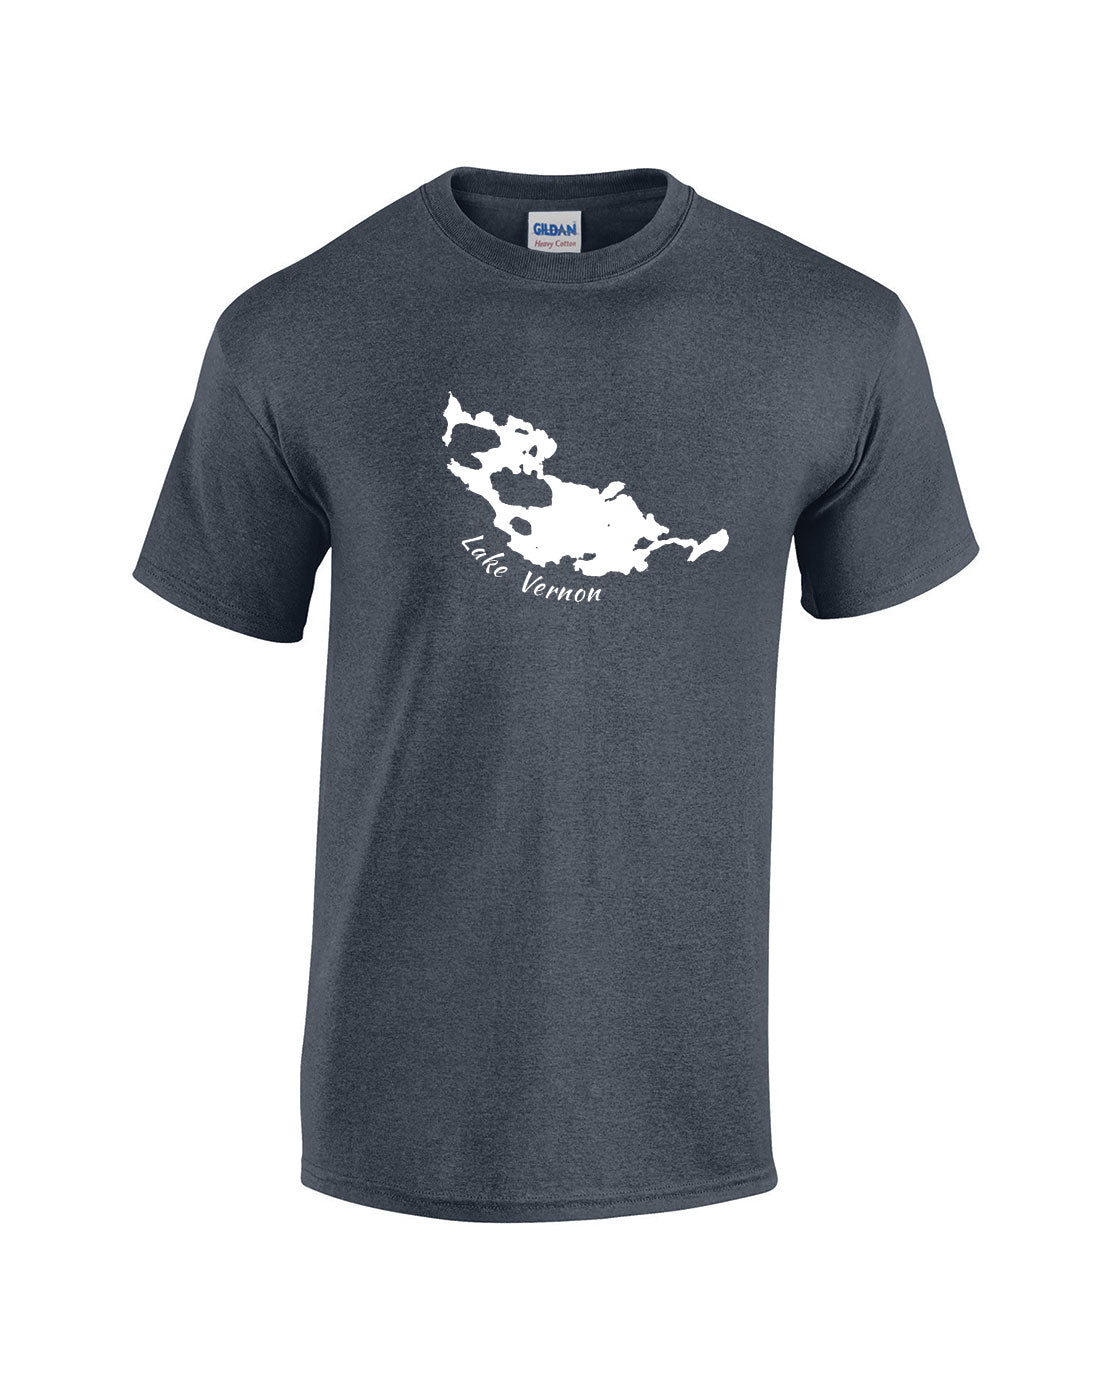 Lake Vernon T-Shirt